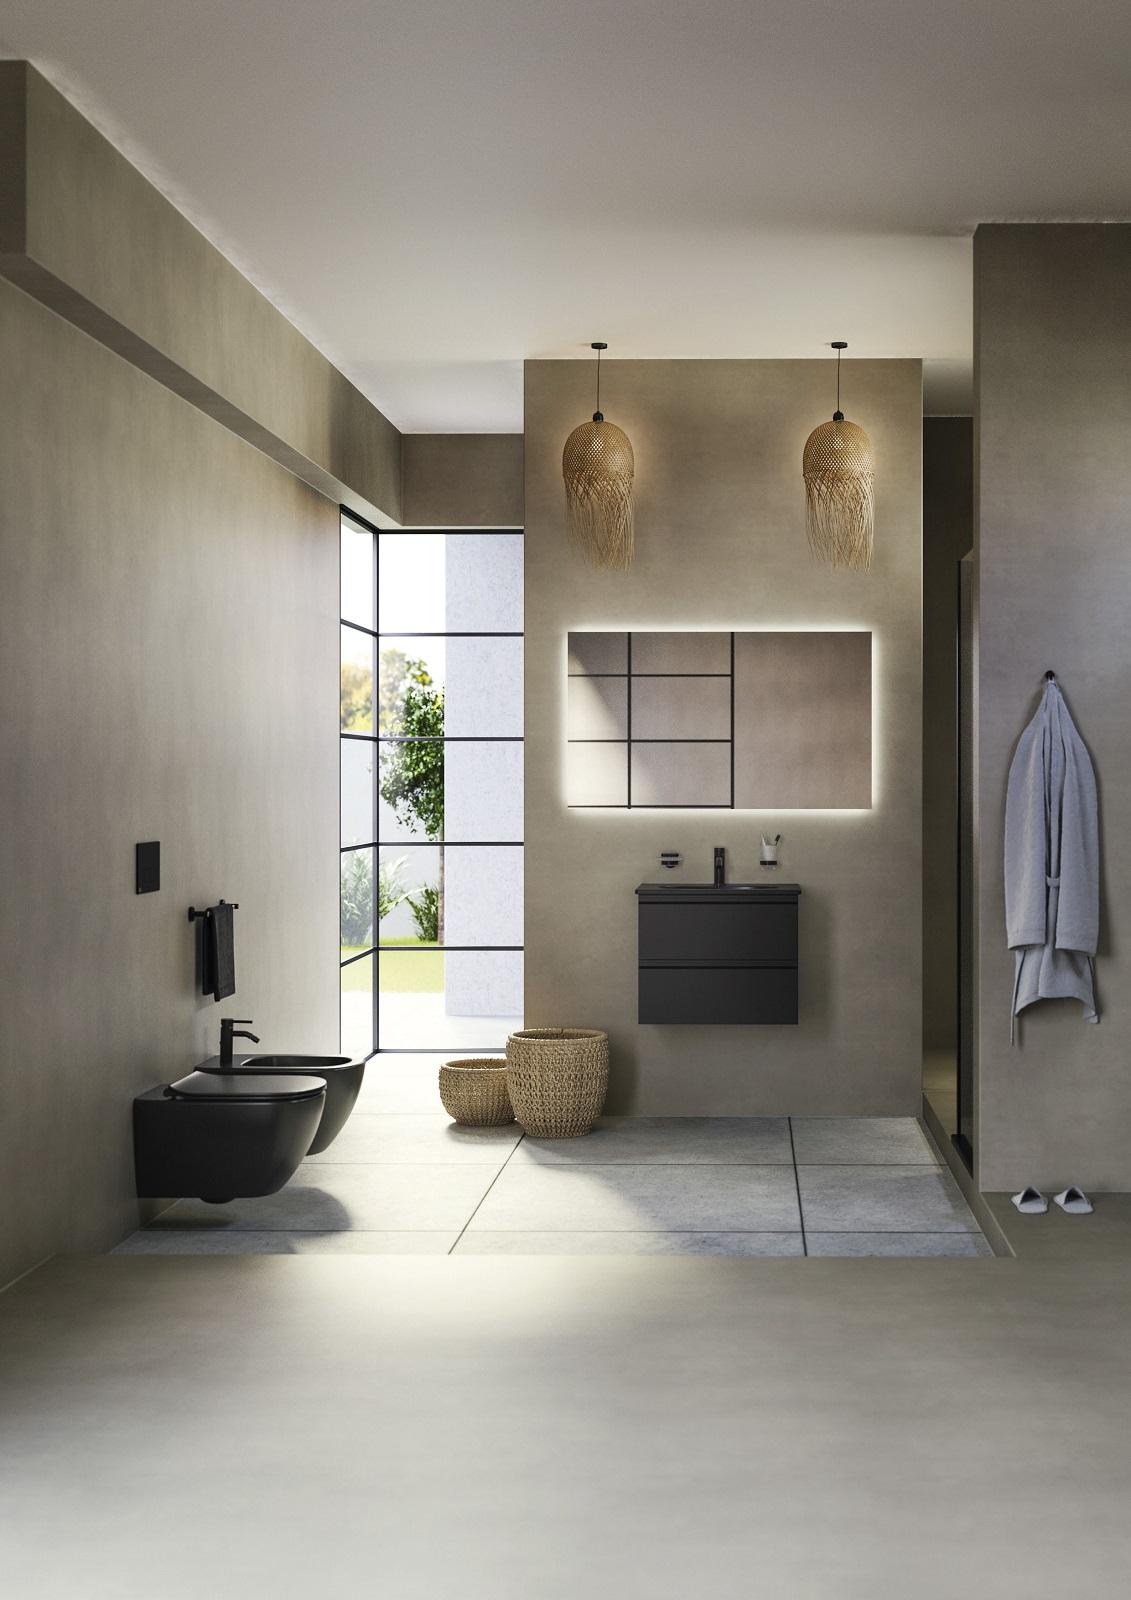 Set accessori bagno moderno in finitura nera opaca con dettagli in bambù